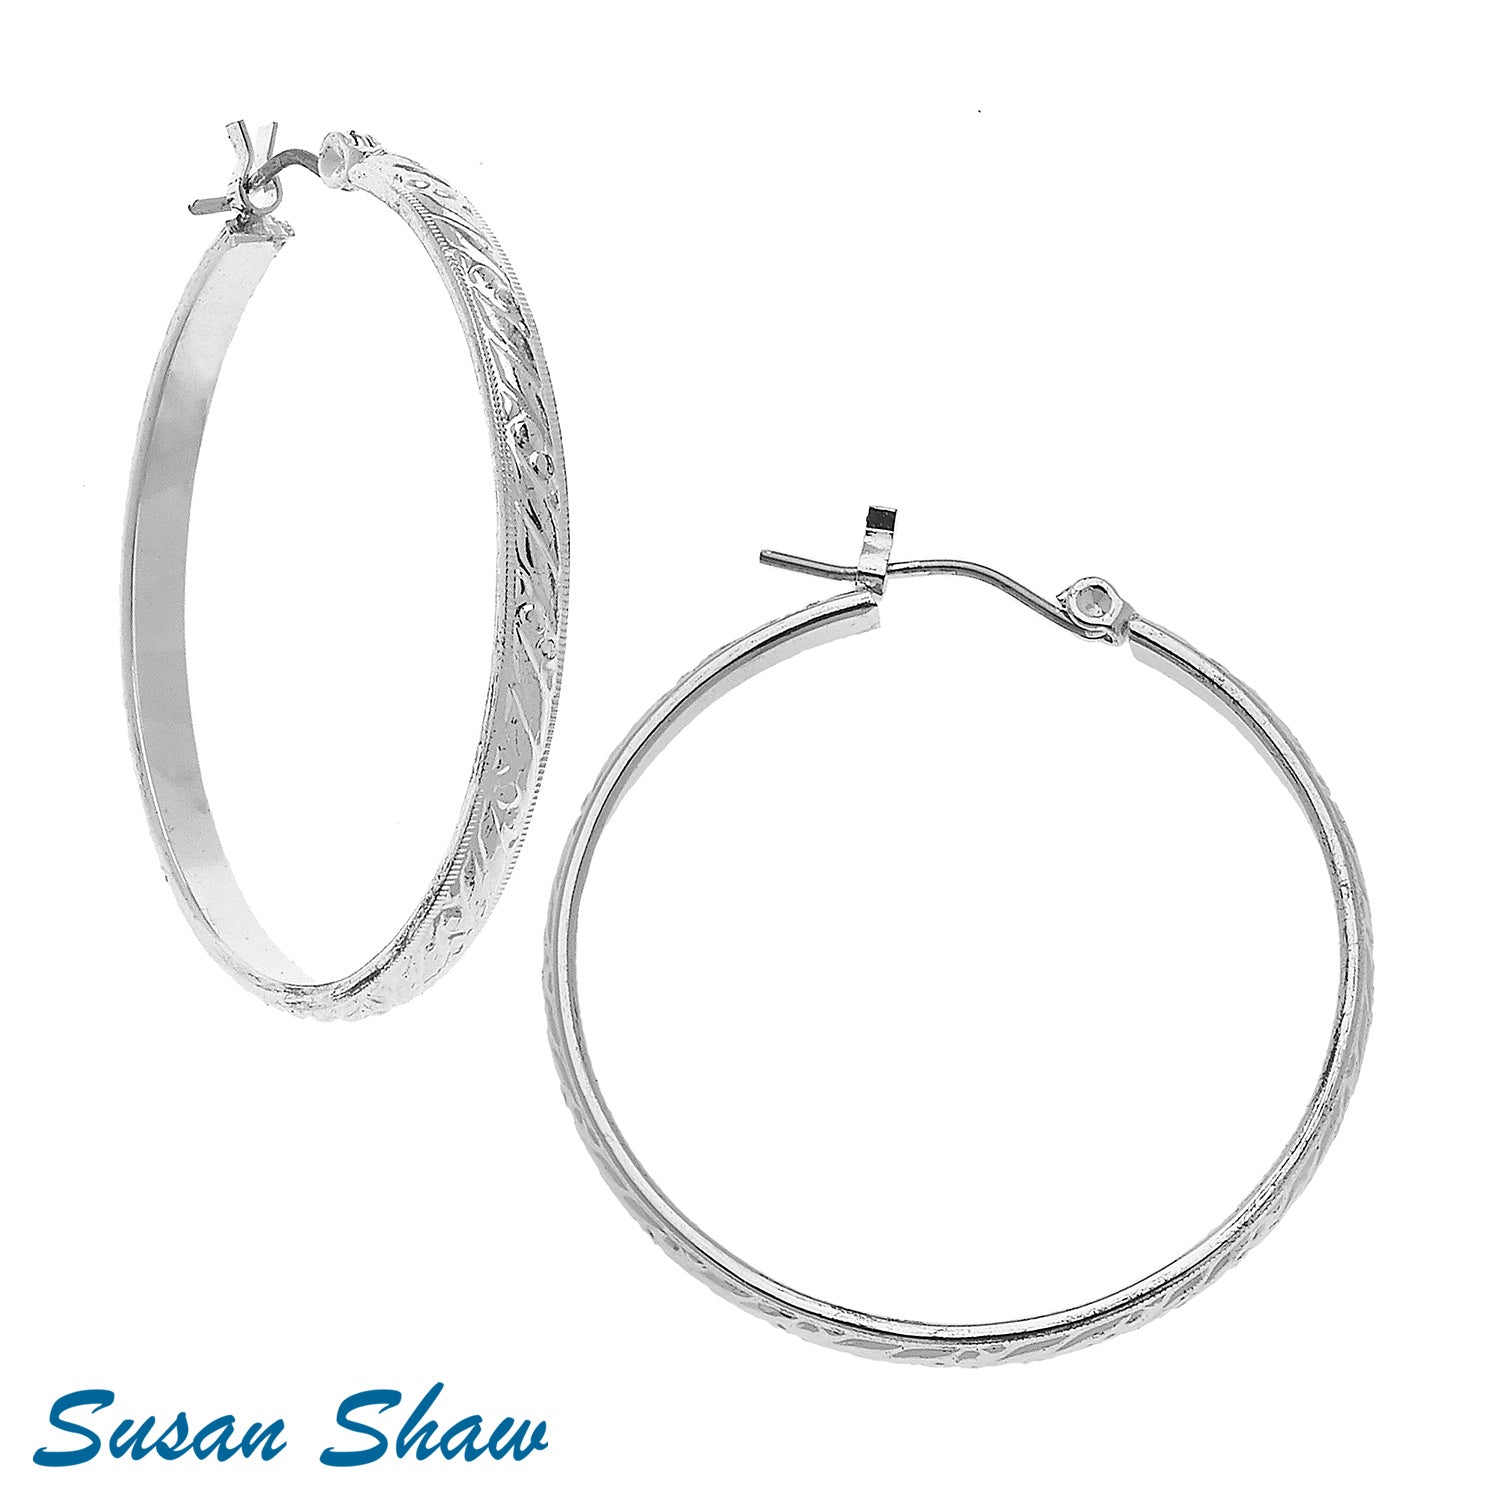 Susan Shaw Assorted Hoop Earrings in Silver.